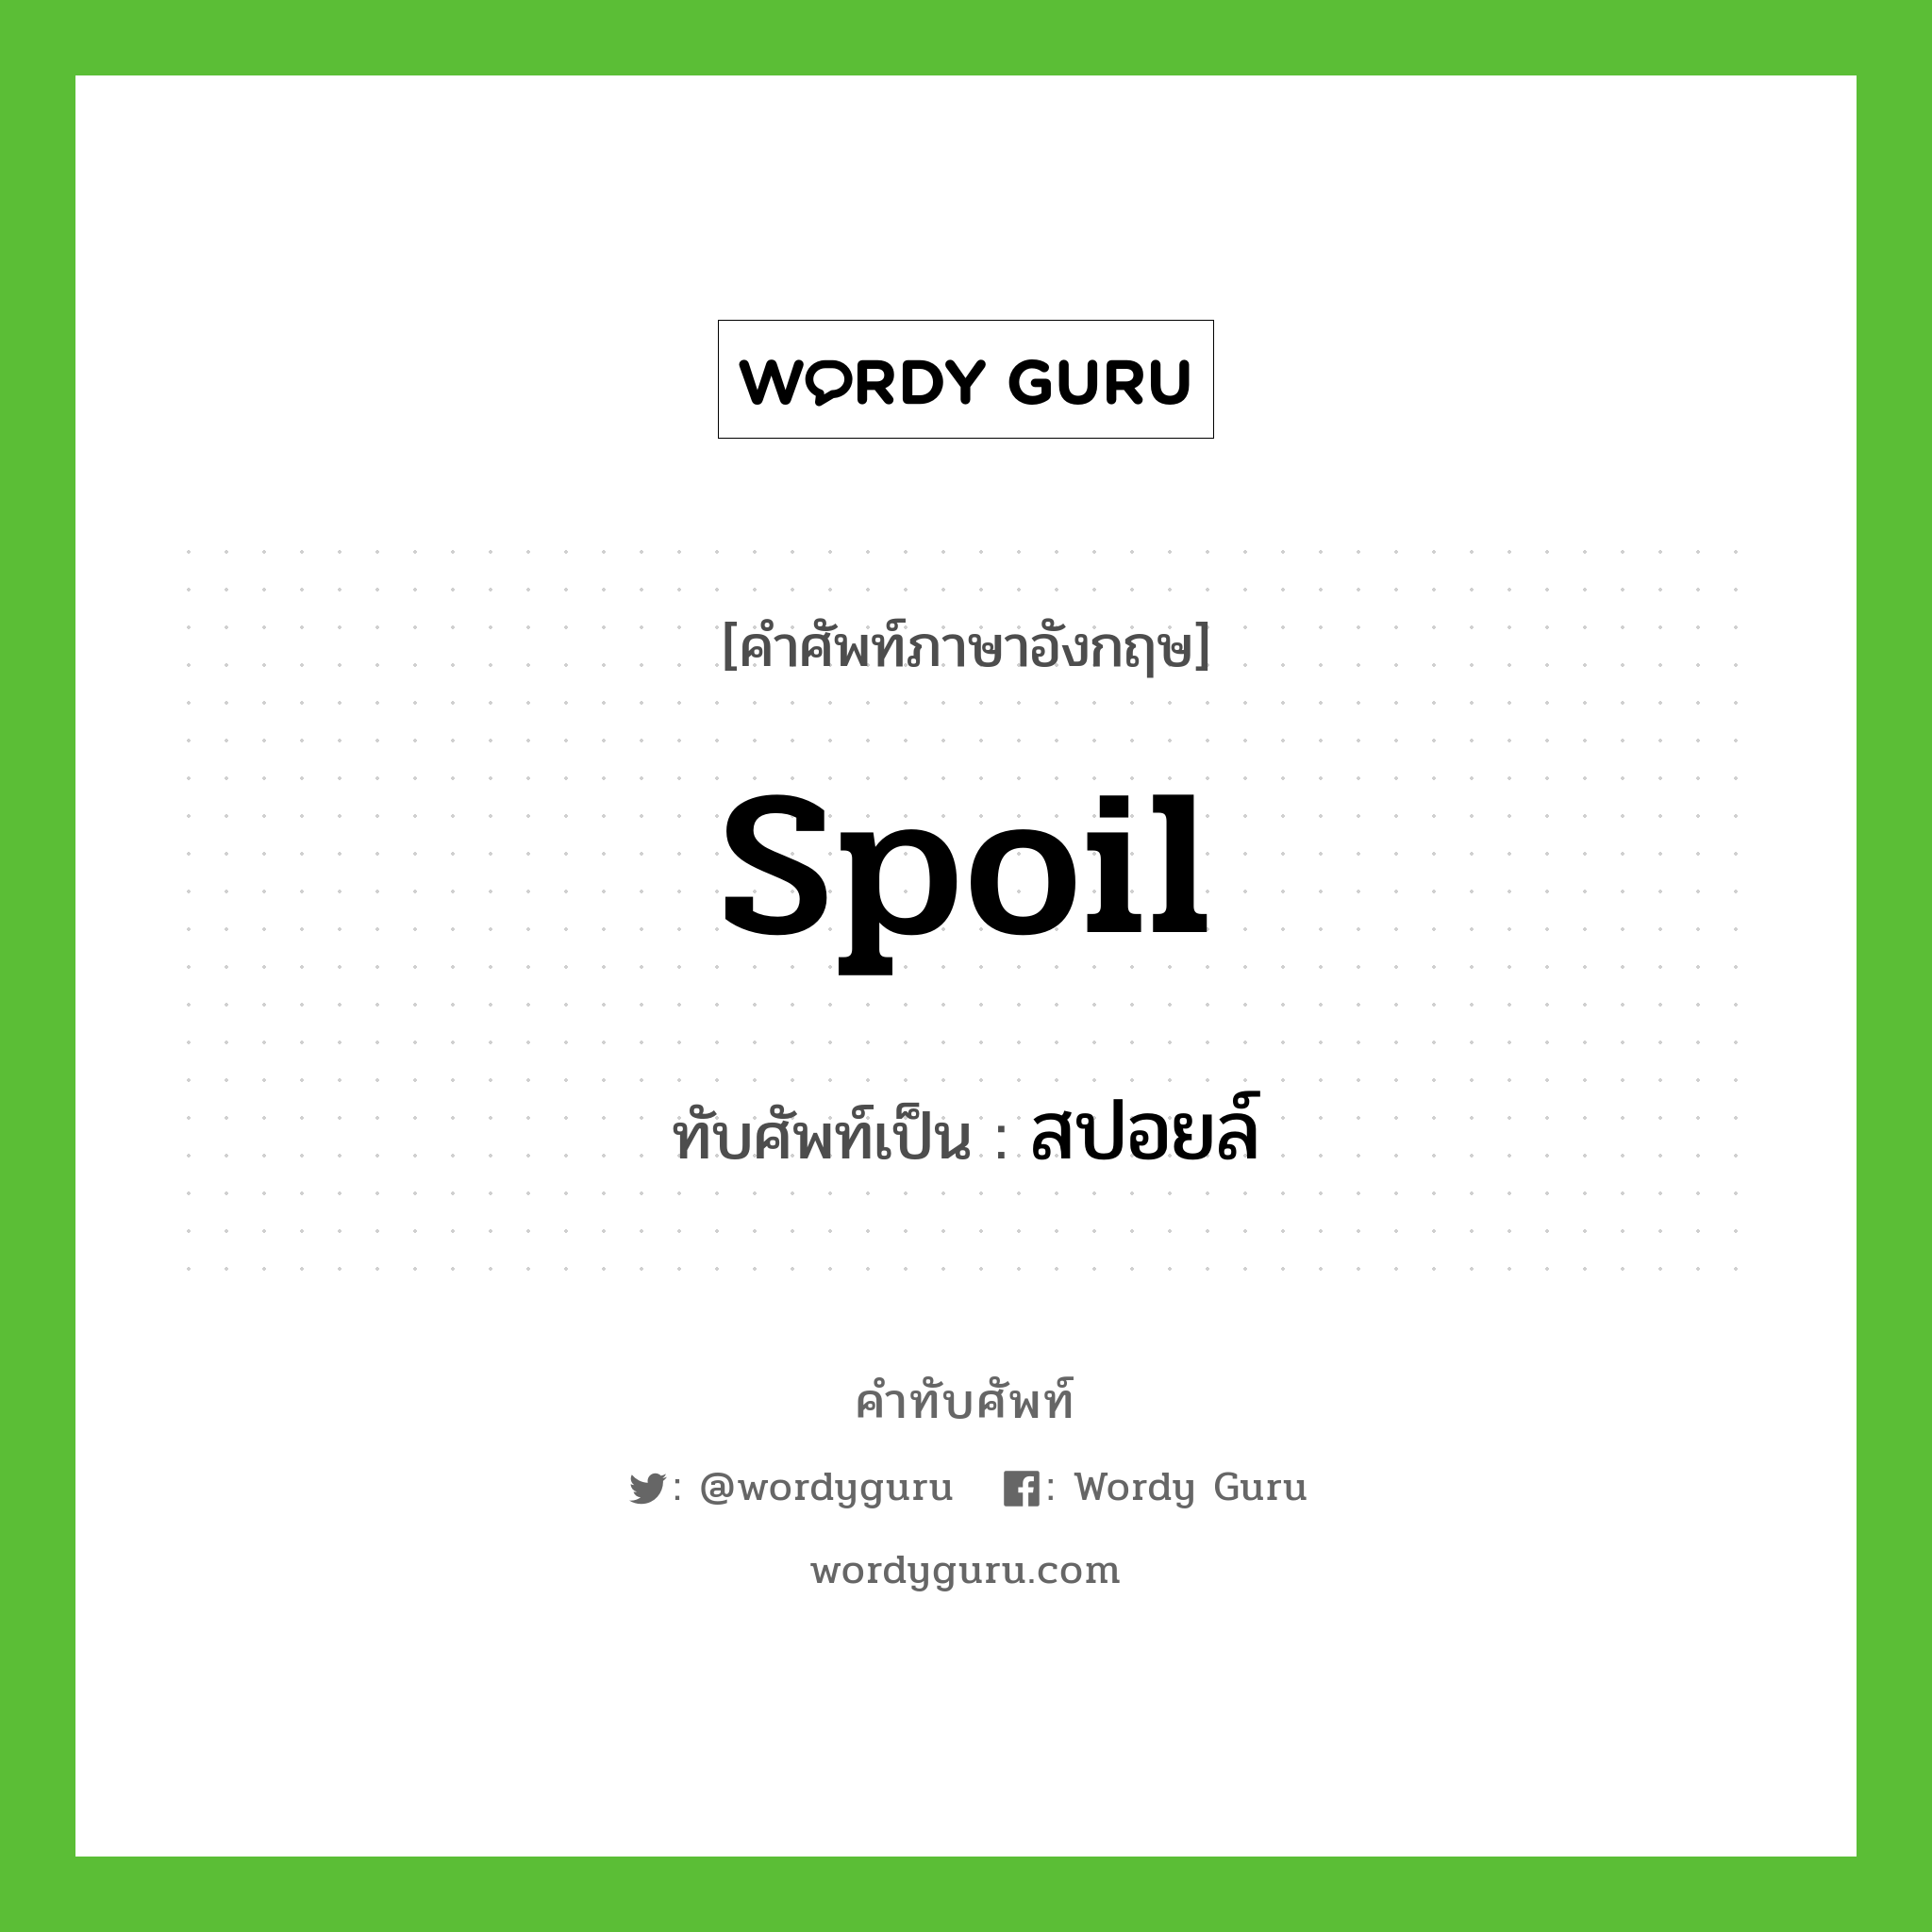 spoil เขียนเป็นคำไทยว่าอะไร?, คำศัพท์ภาษาอังกฤษ spoil ทับศัพท์เป็น สปอยล์